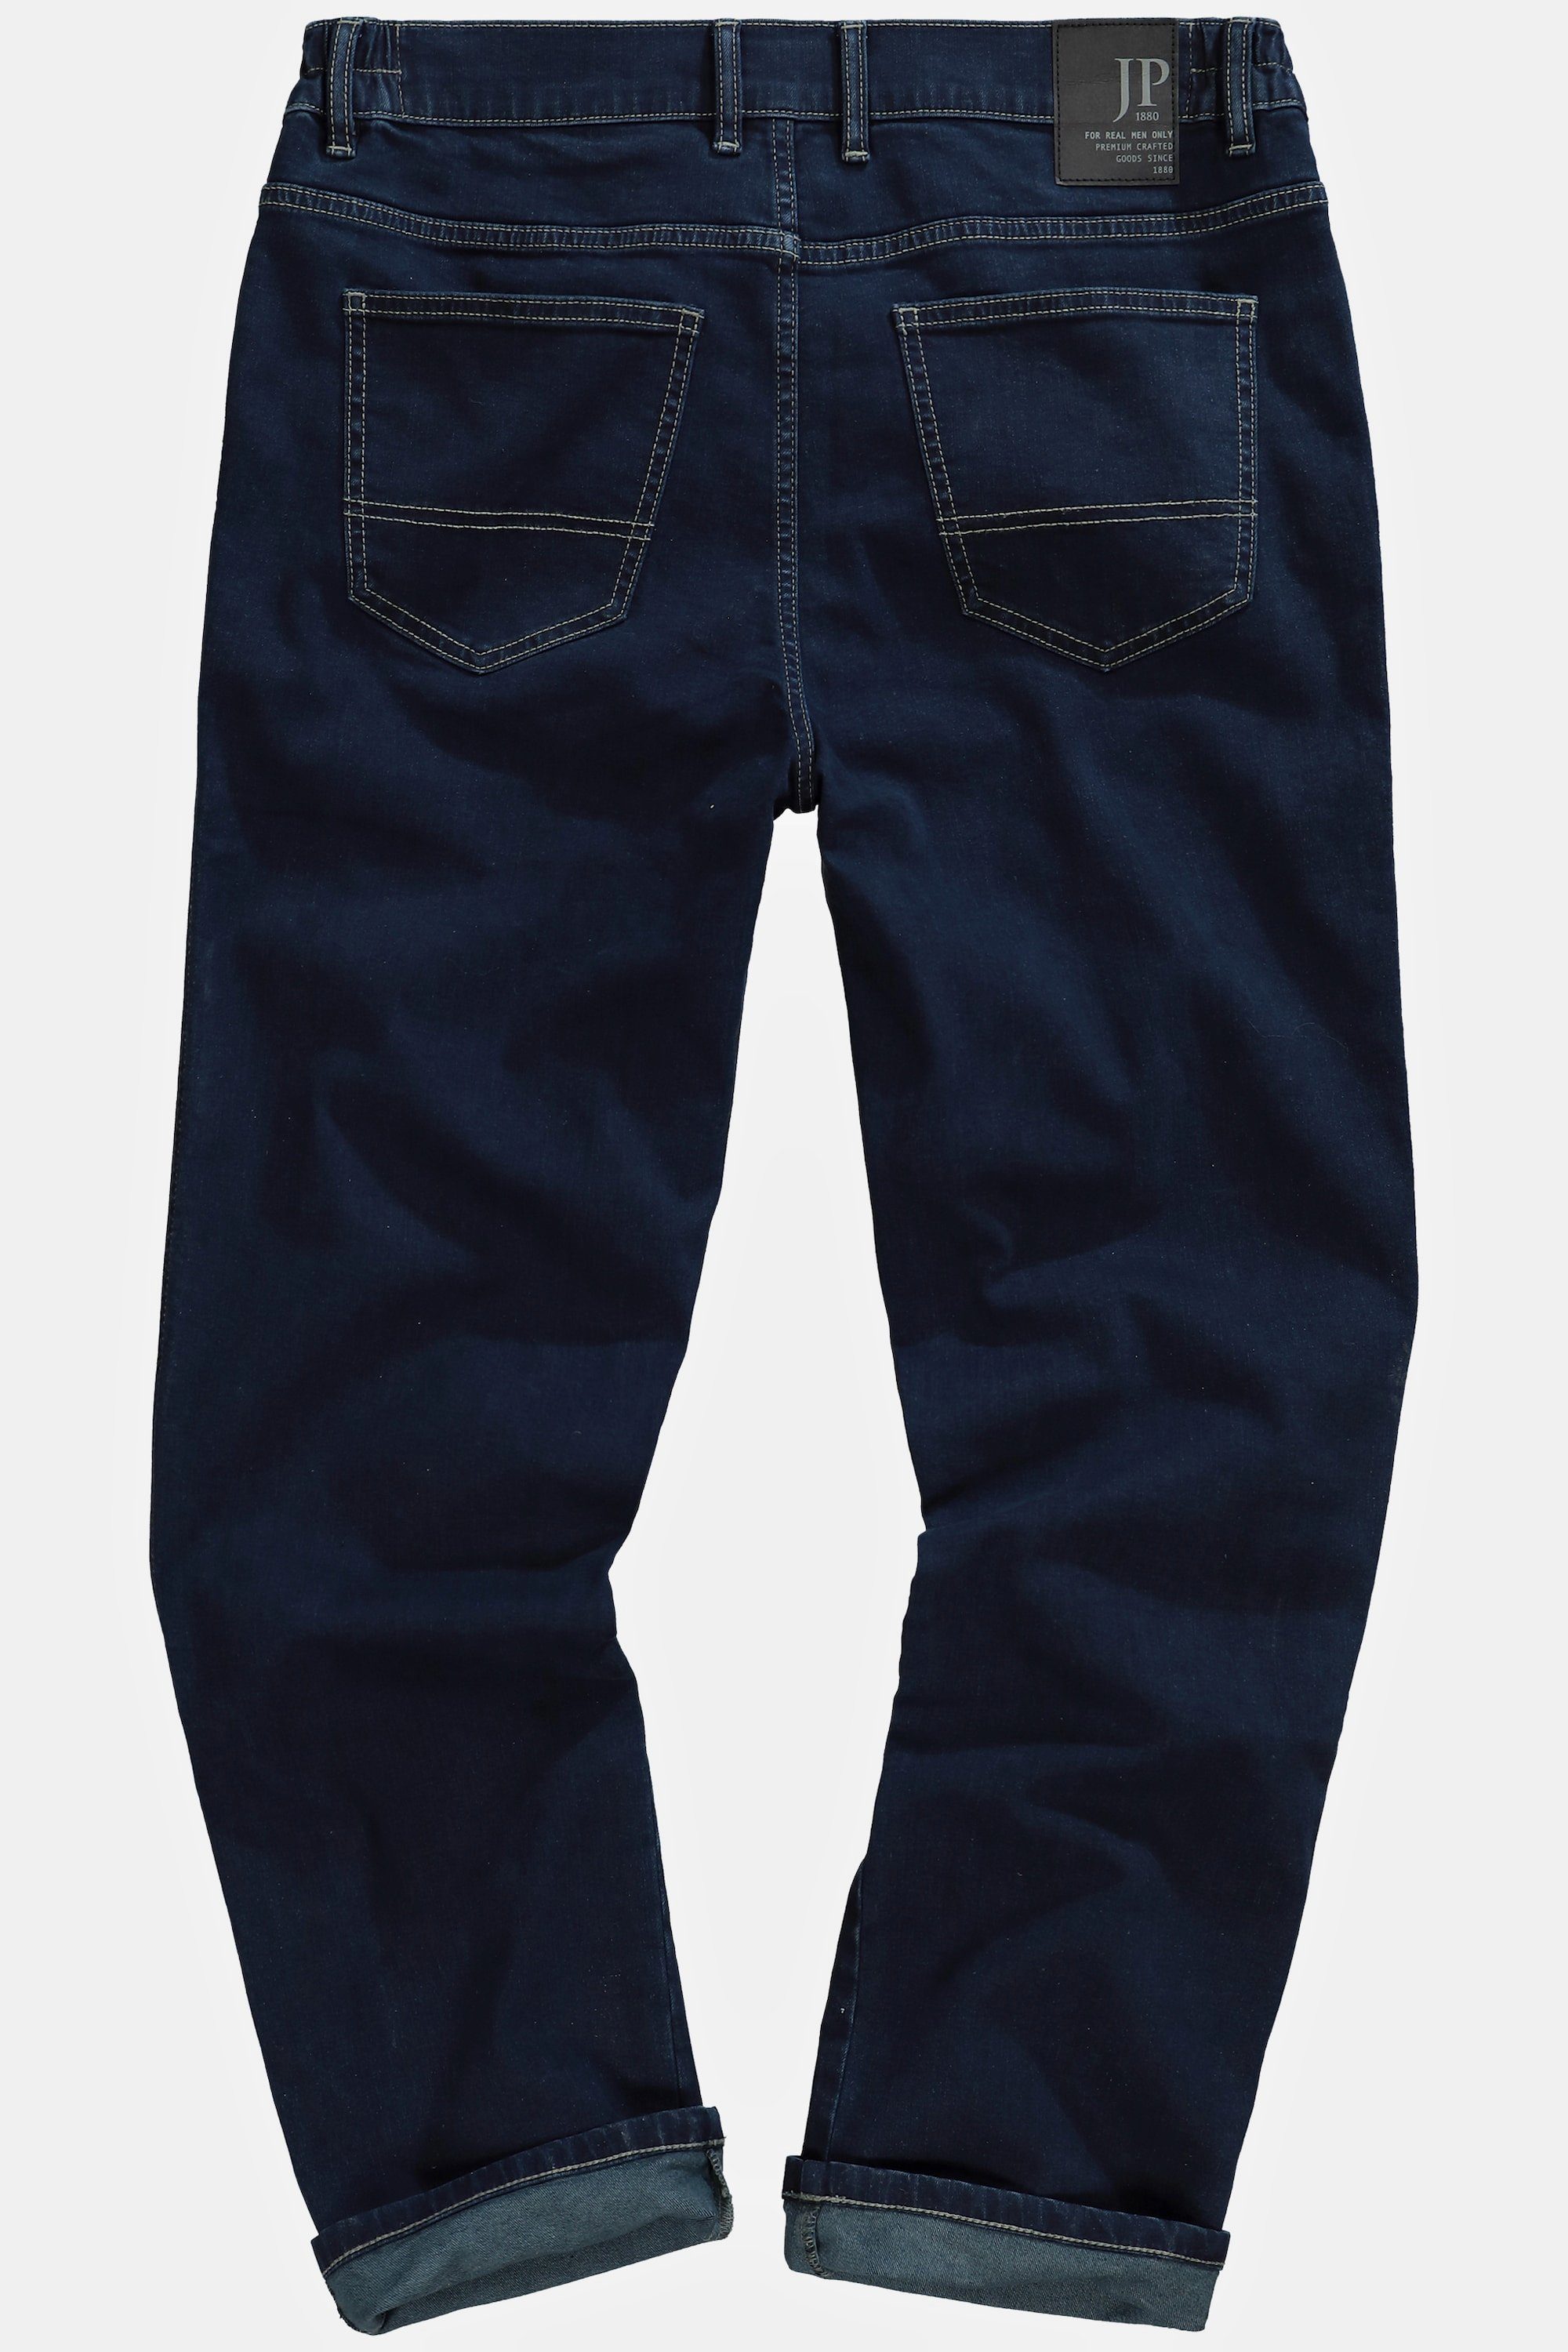 Gr. Regular bis 36/72 Cargohose blue Traveller-Jeans JP1880 denim Fit